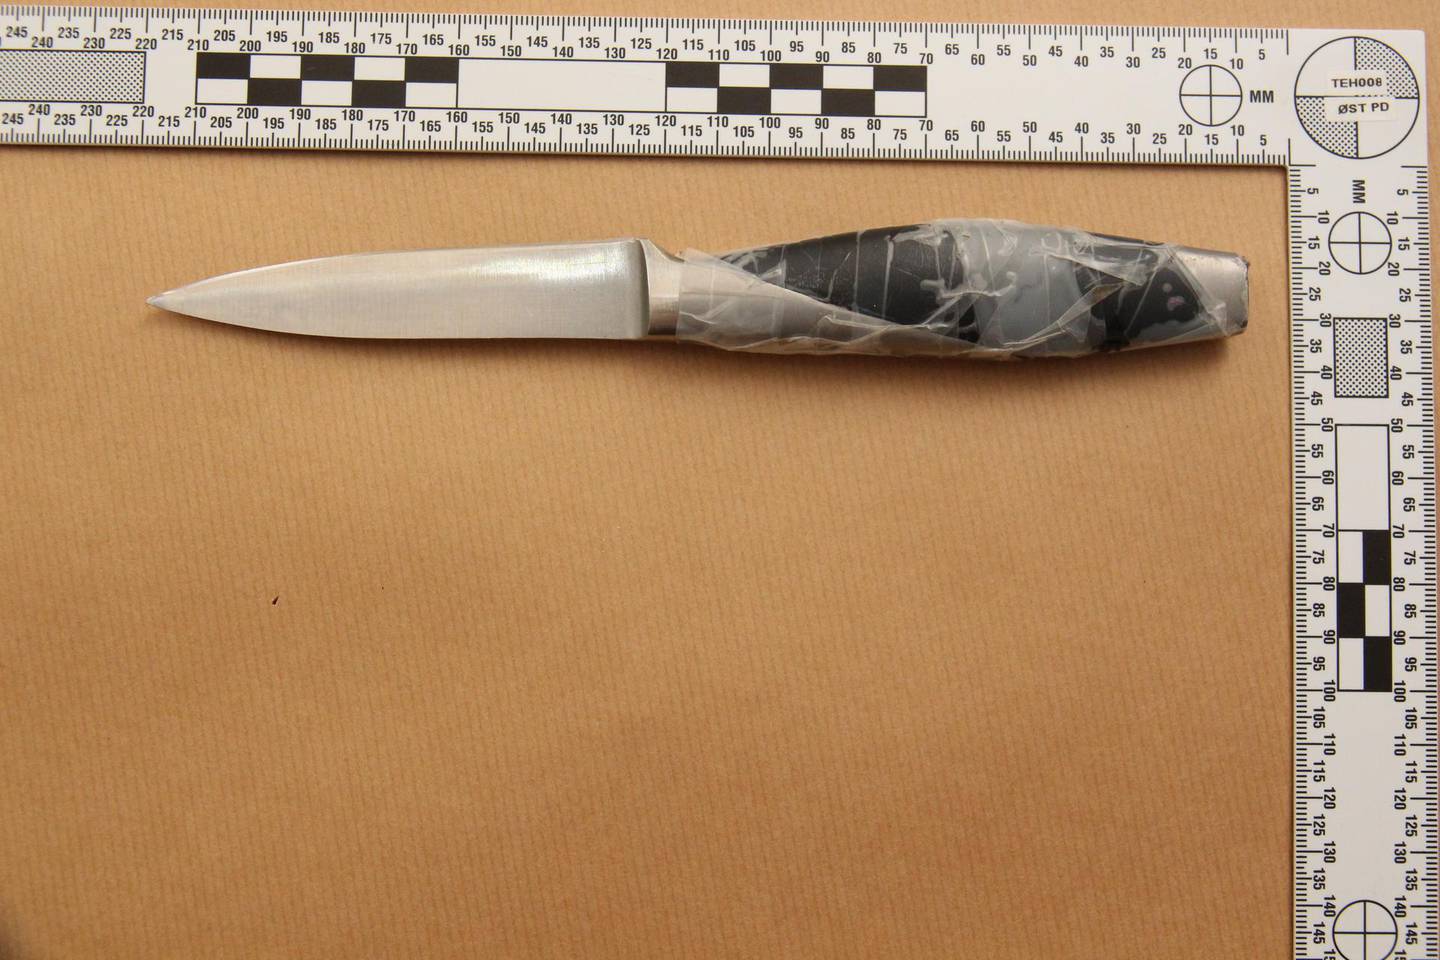 Dette er kniven som politiet mener 65-åringen ble stukket med.